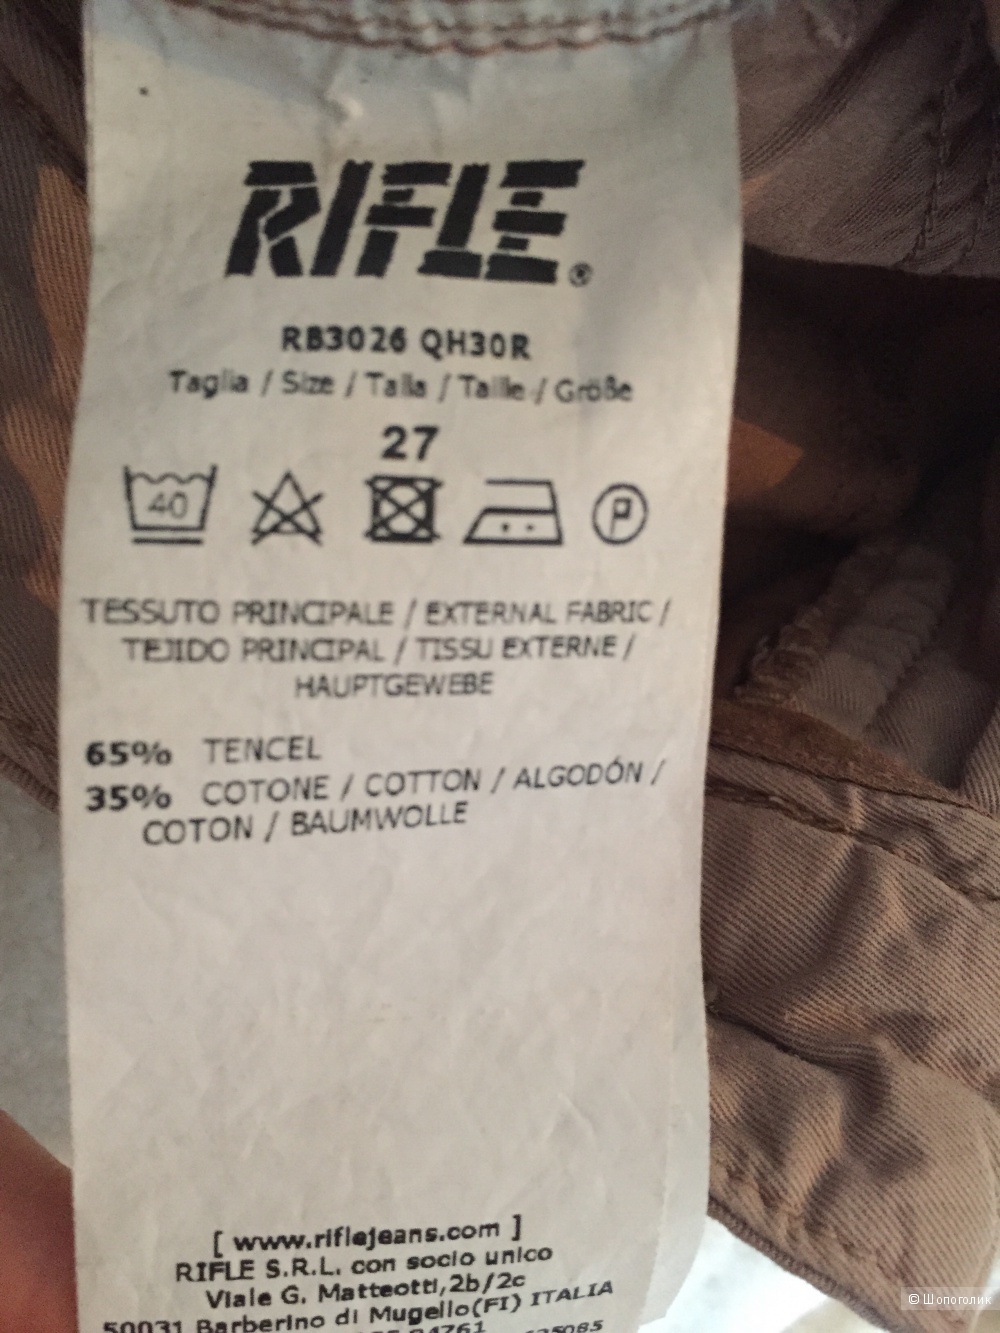 Брюки Rifle, 27 размер